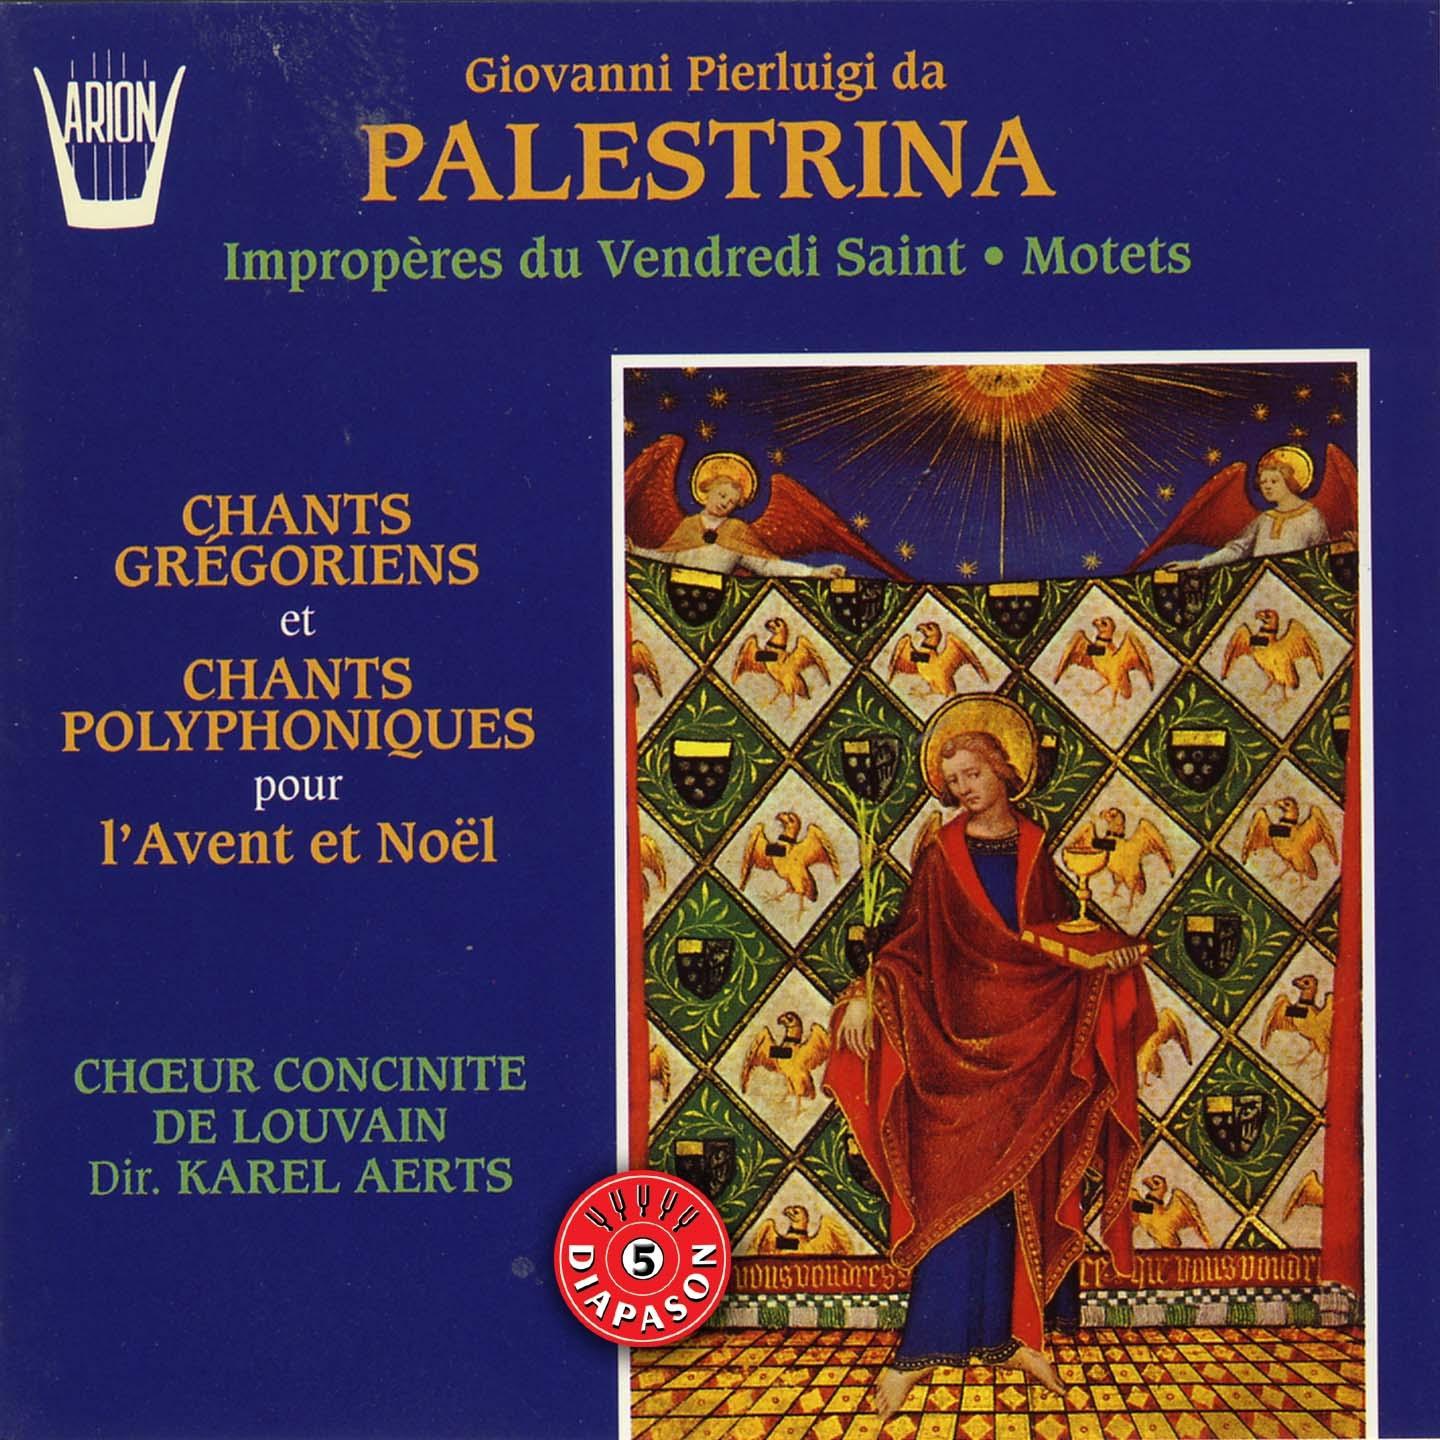 Palestrina : Imprope res du vendredi saint, Motets, Chants gre goriens, Chants polyphoniques pour l' avent et no l